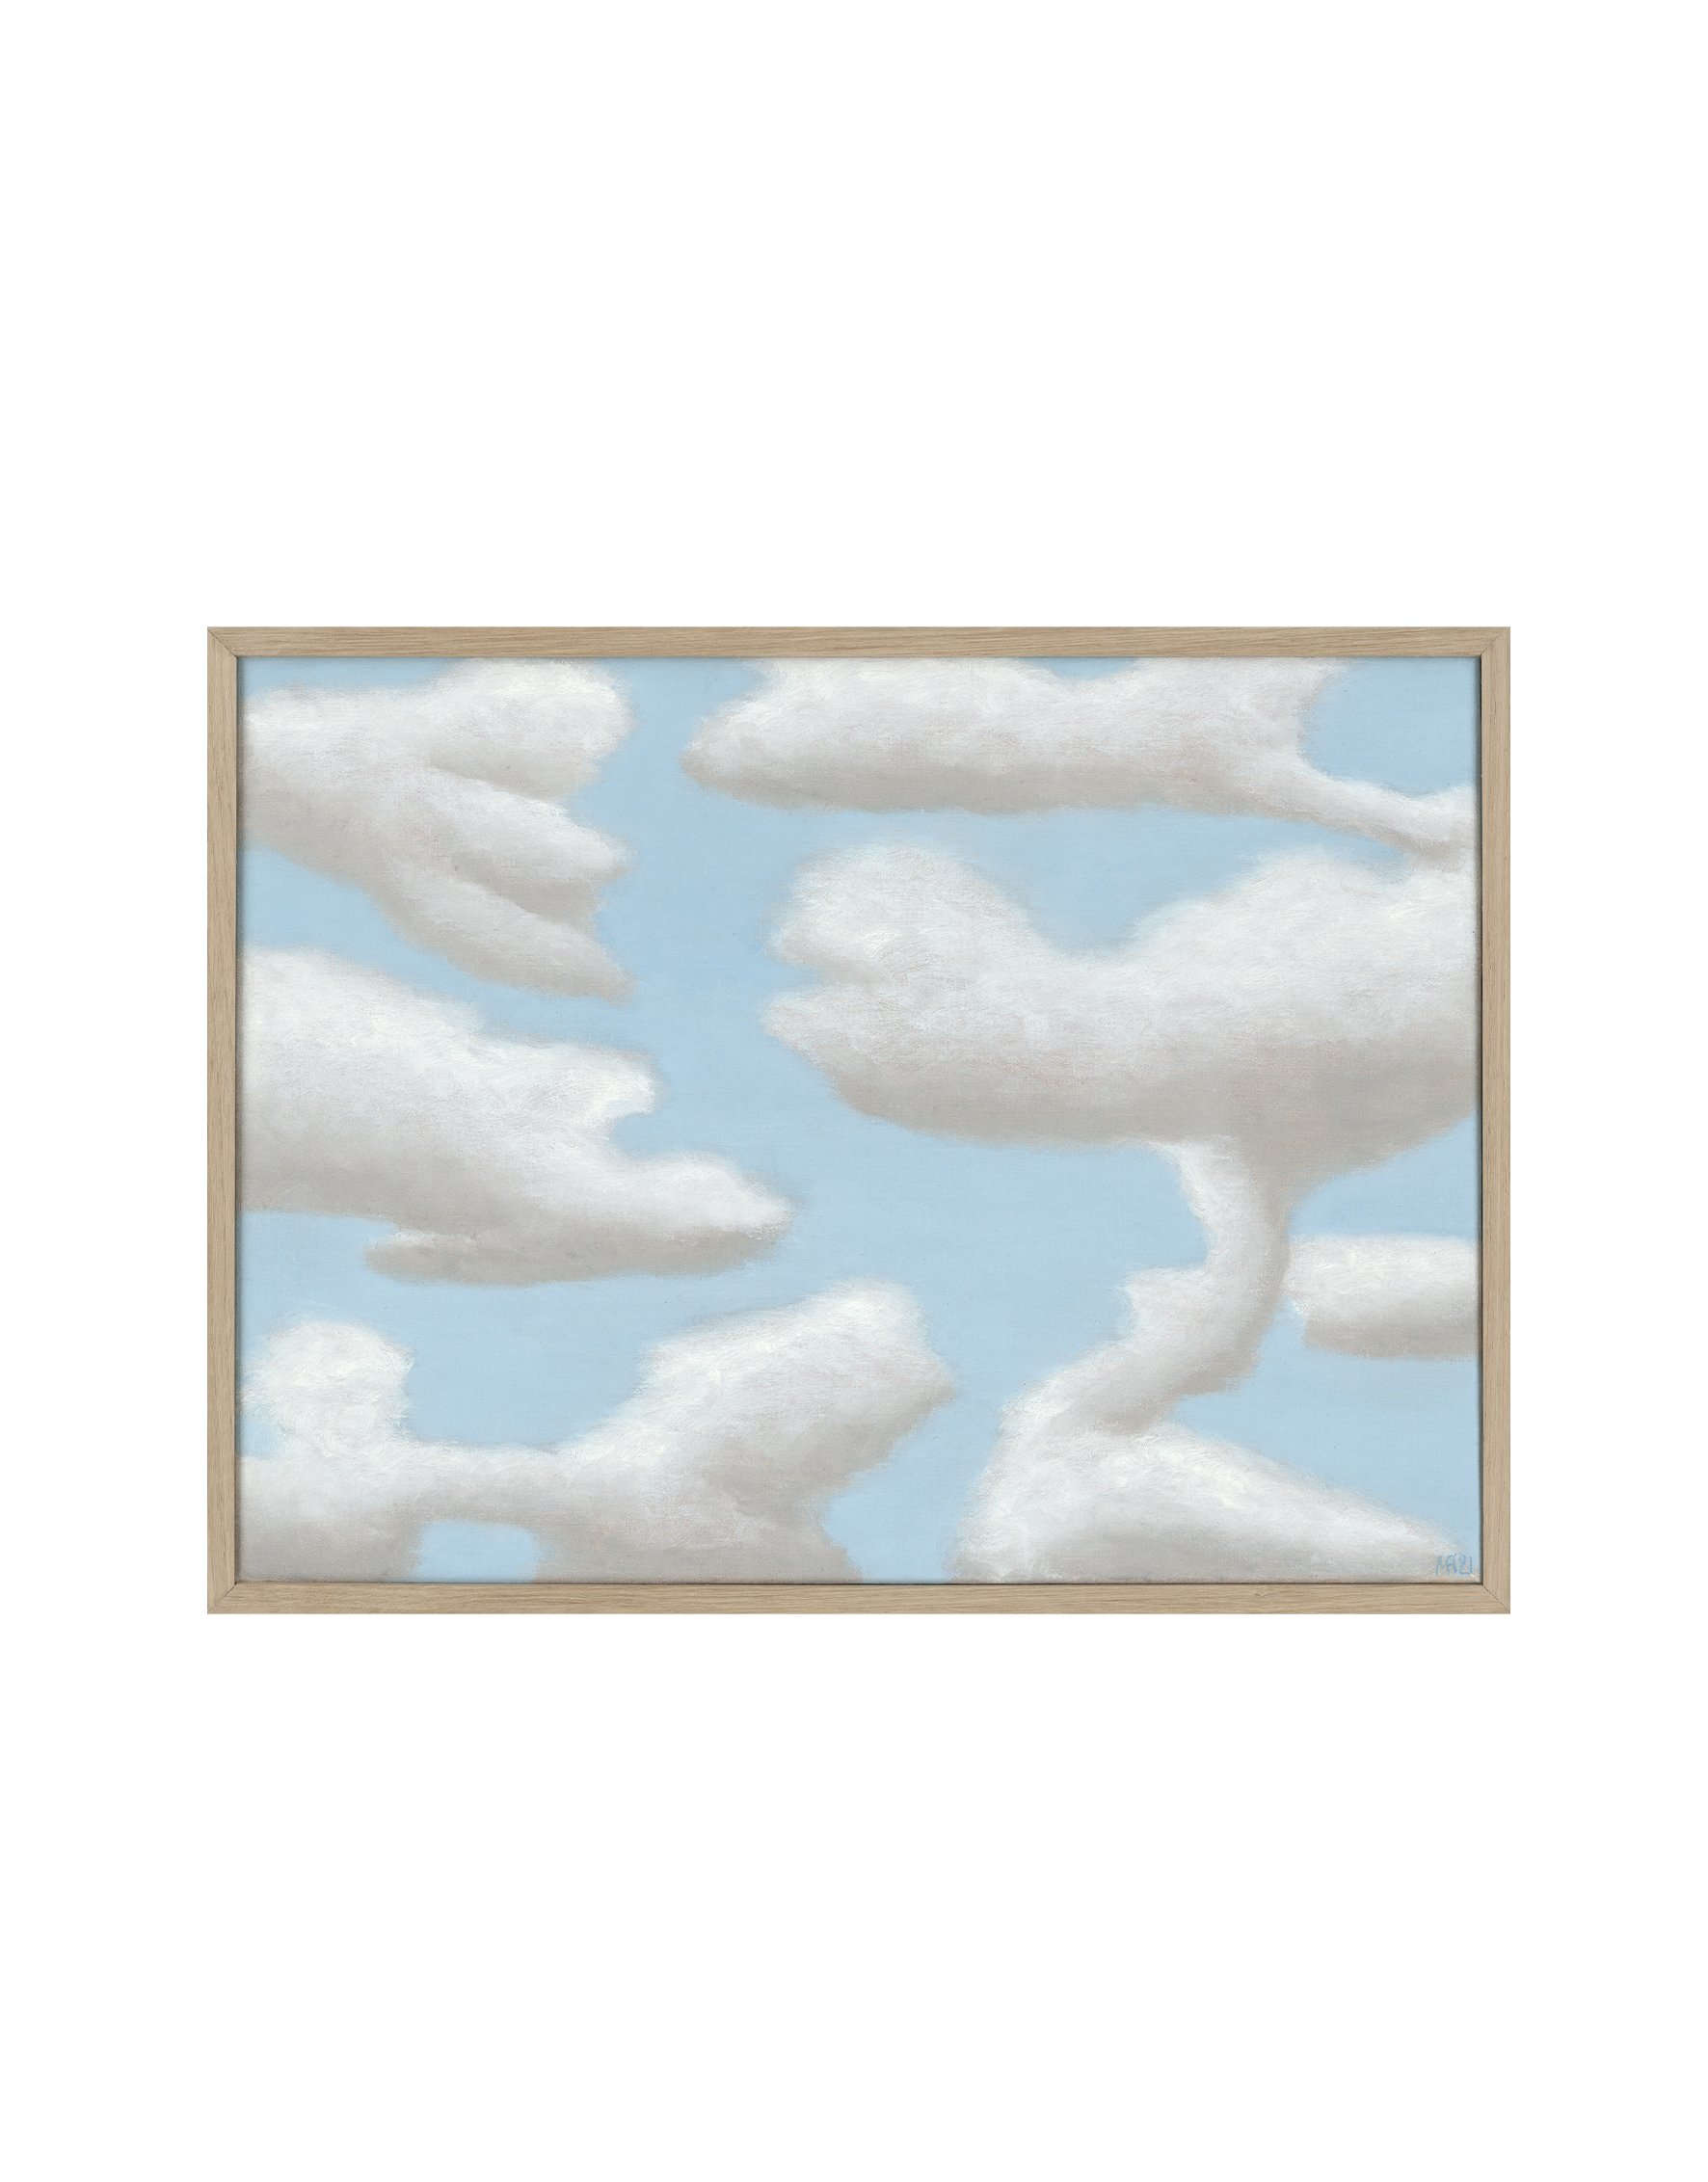 Title: Dream Clouds